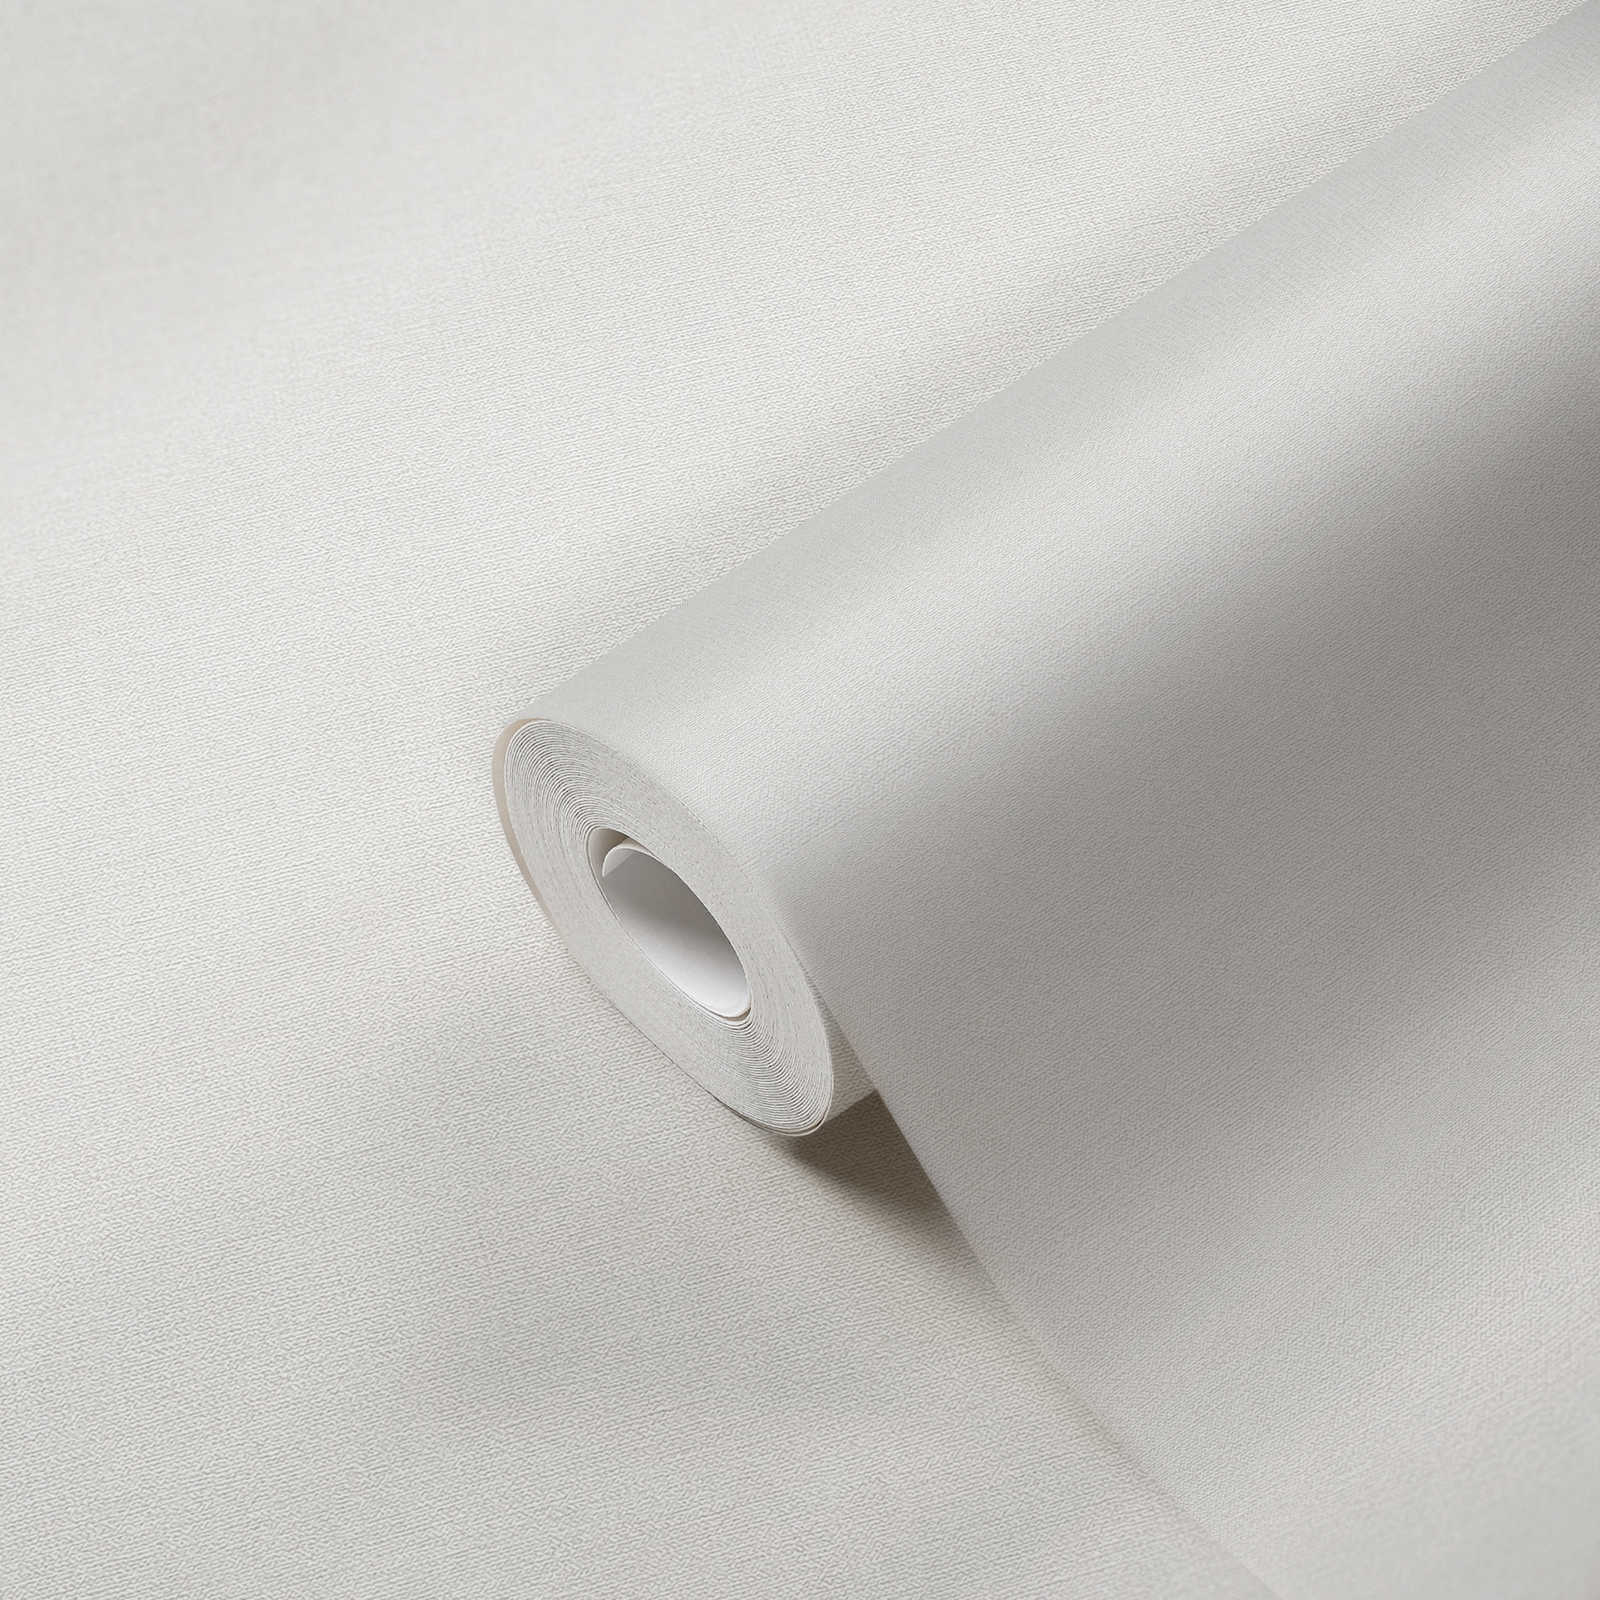             PVC-vrij vliesbehang met linnenlook - grijs
        